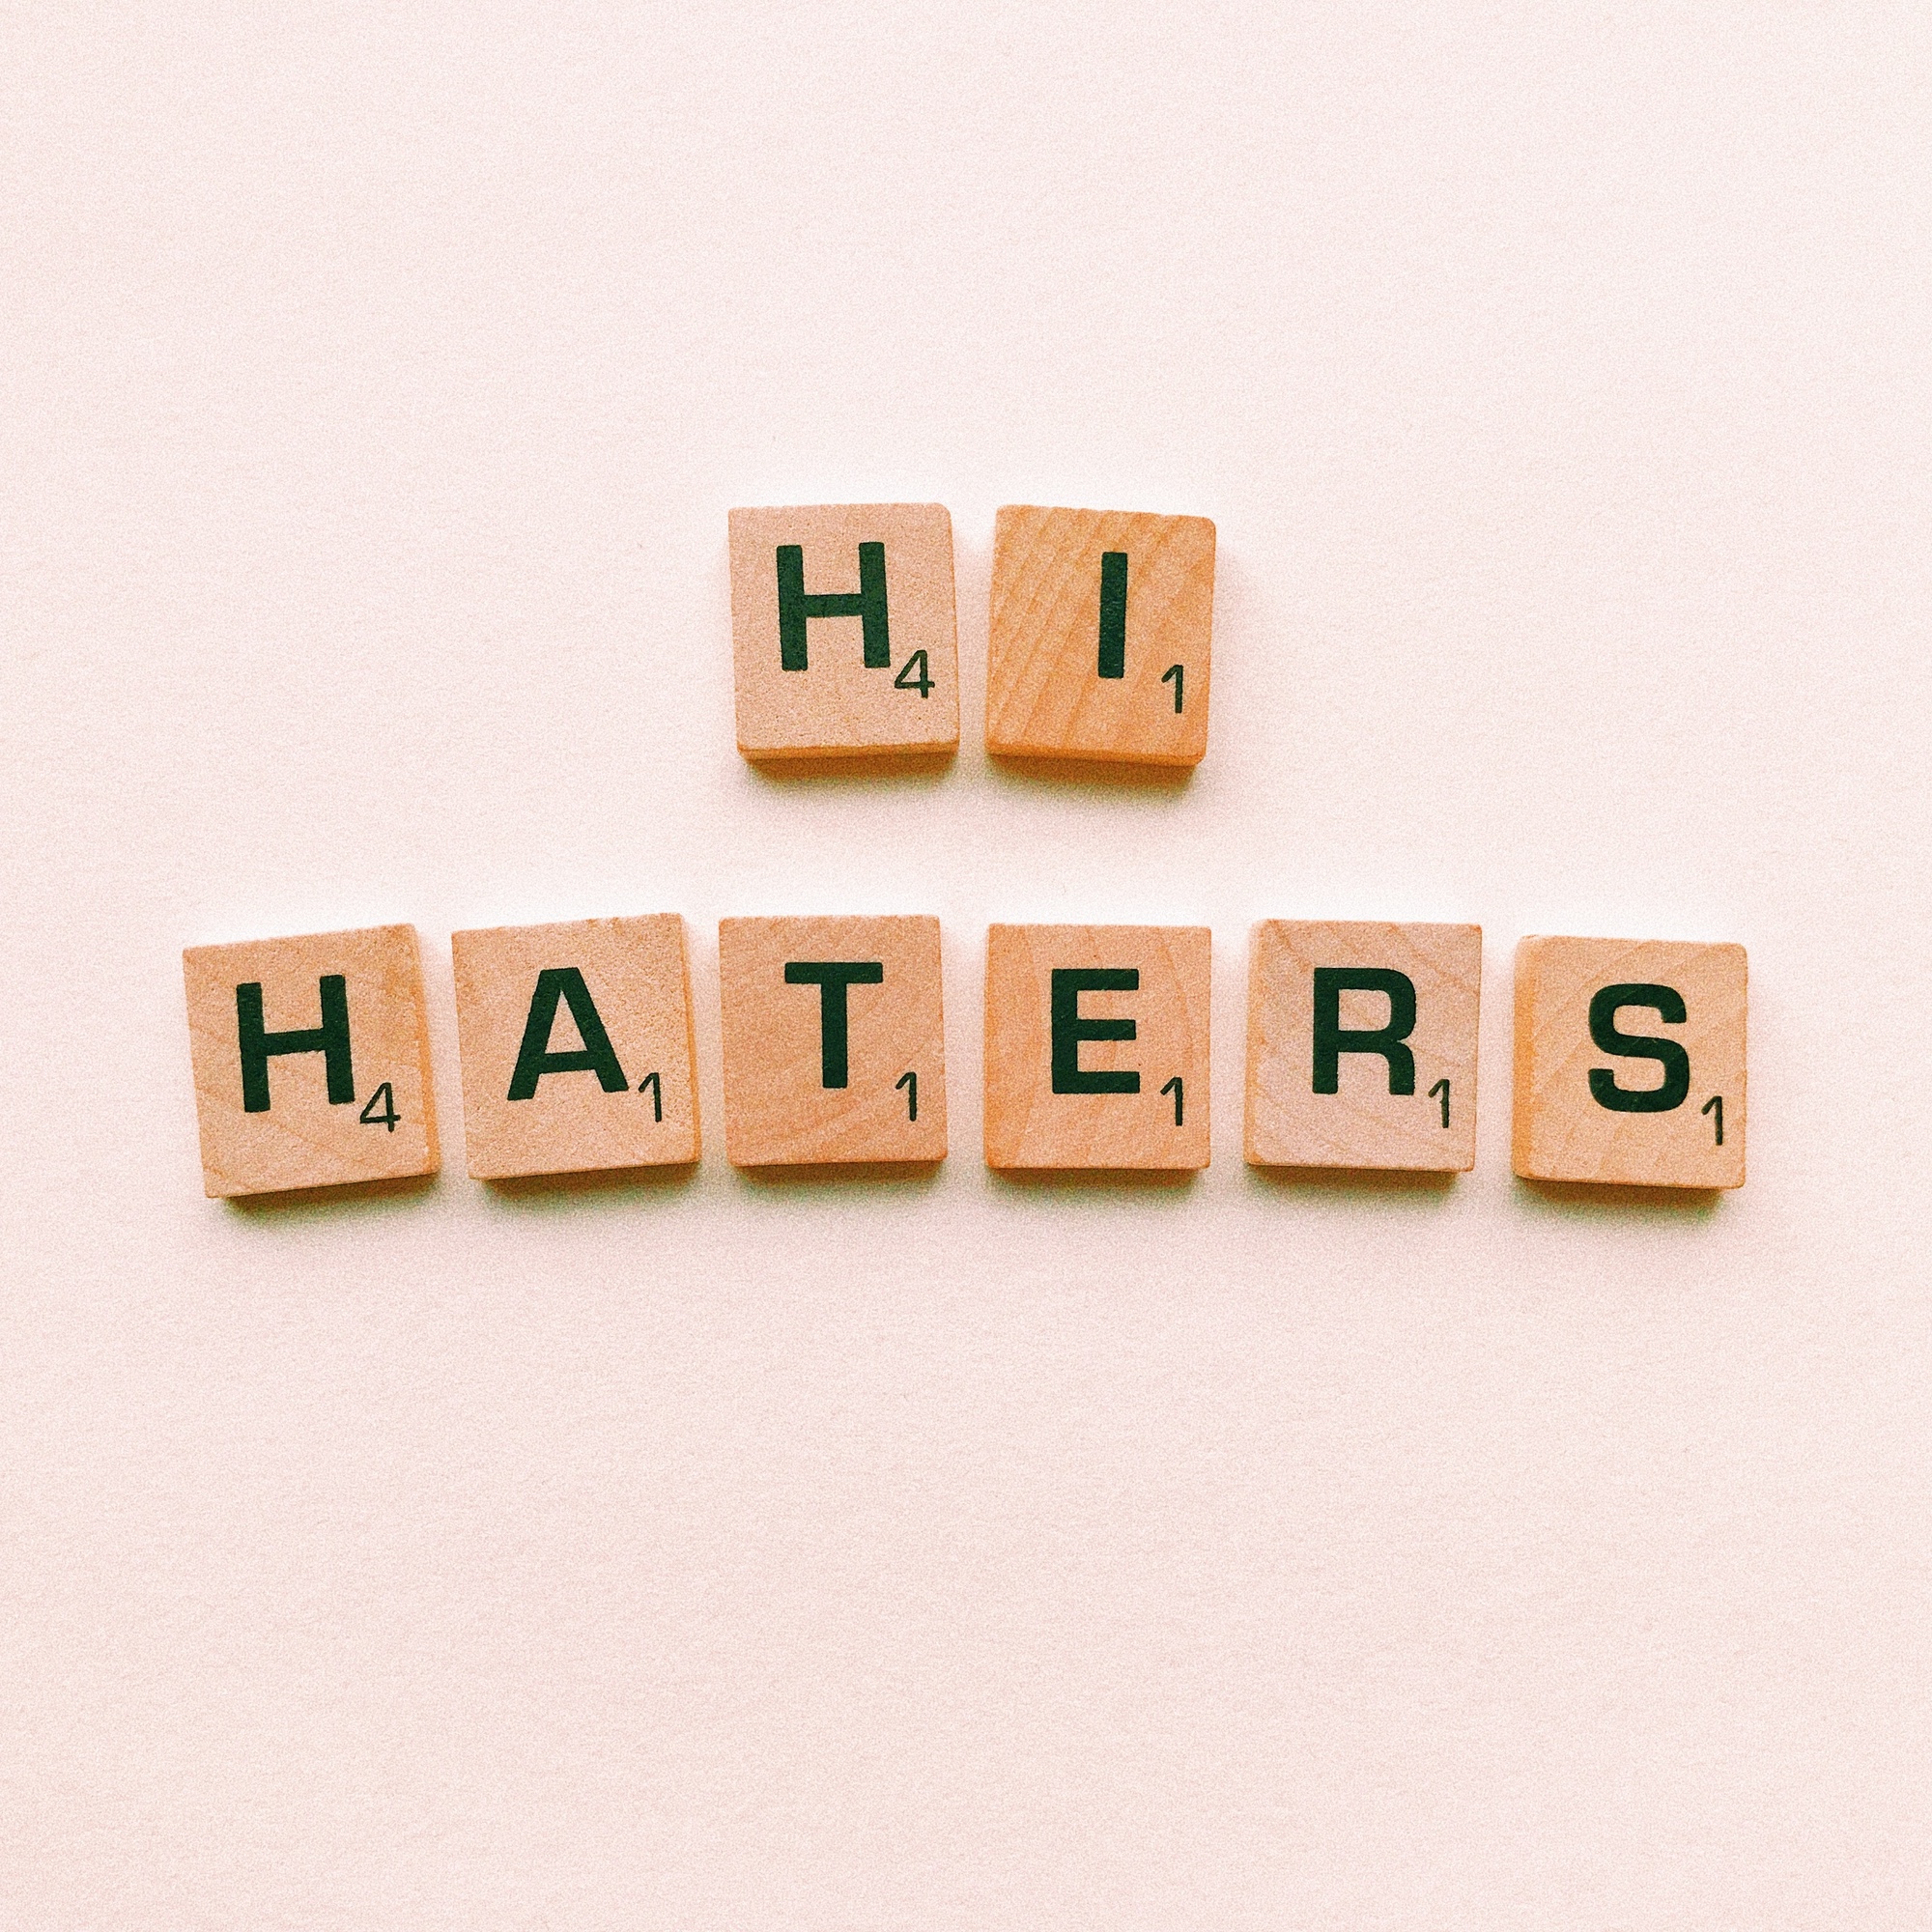 Foto: «HI HATERS» in Scrabble-Buchstaben